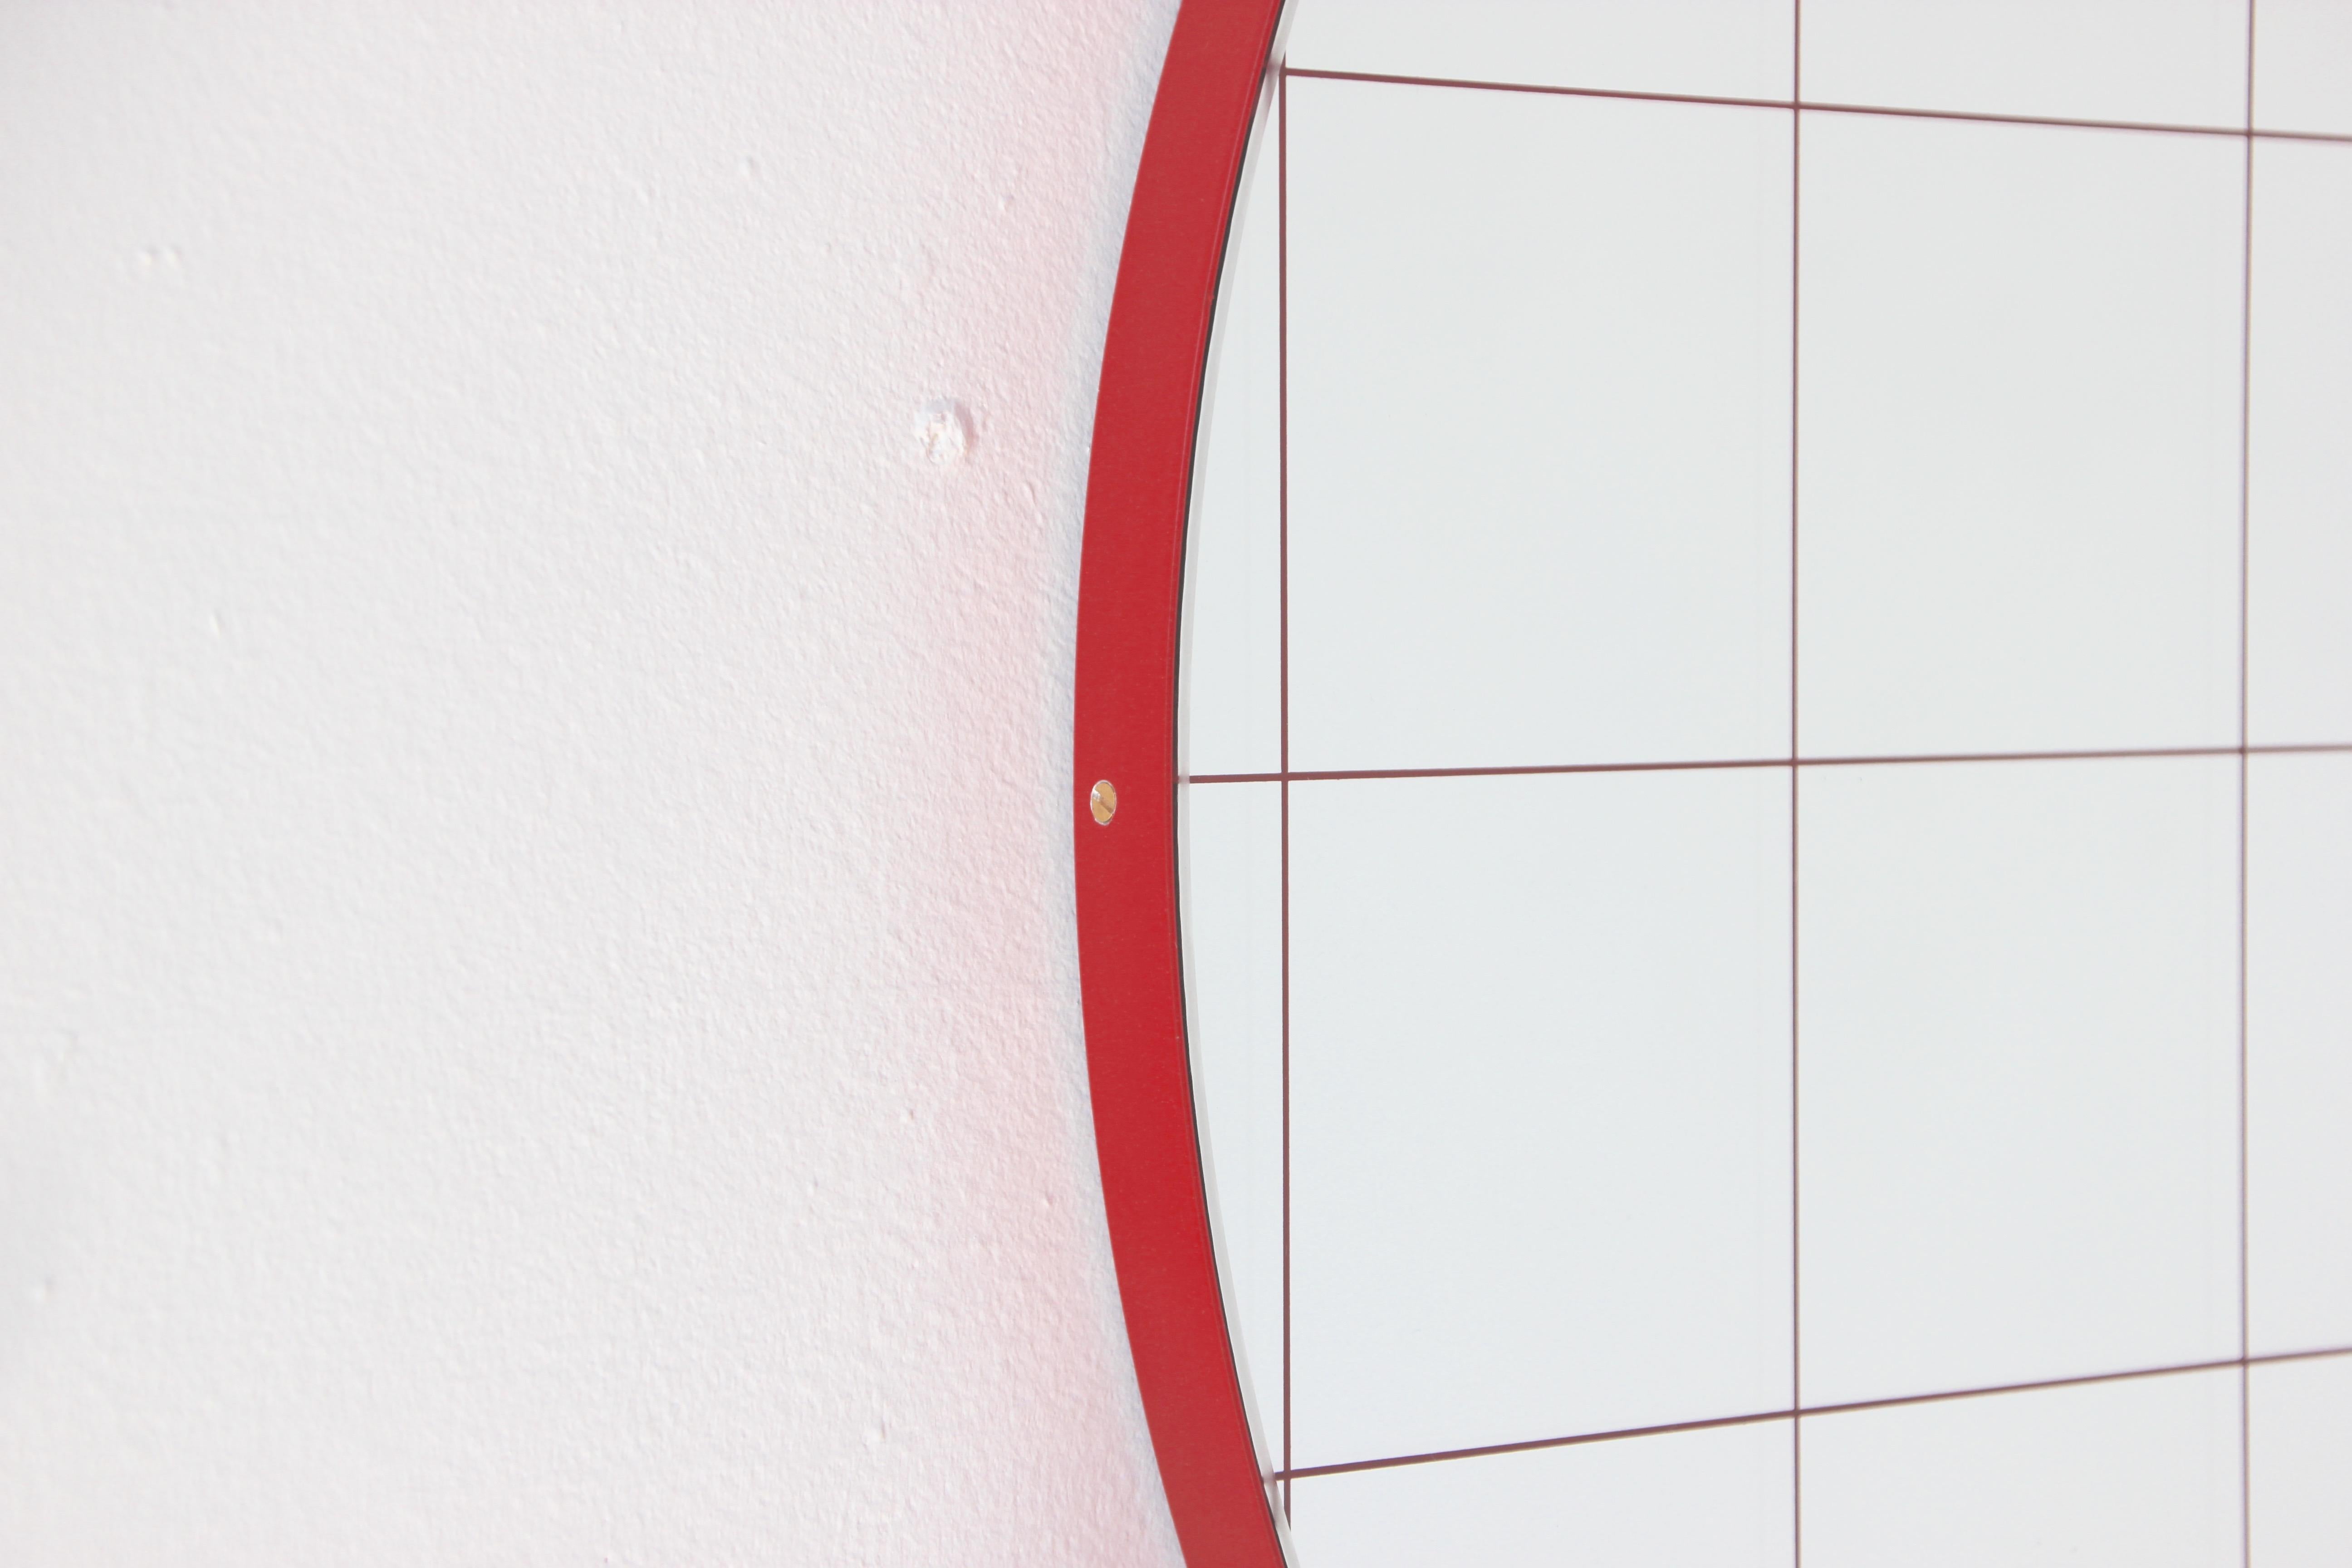 Orbis Red Grid Sandblasted Round Modern Mirror with Red Frame, Regular 1